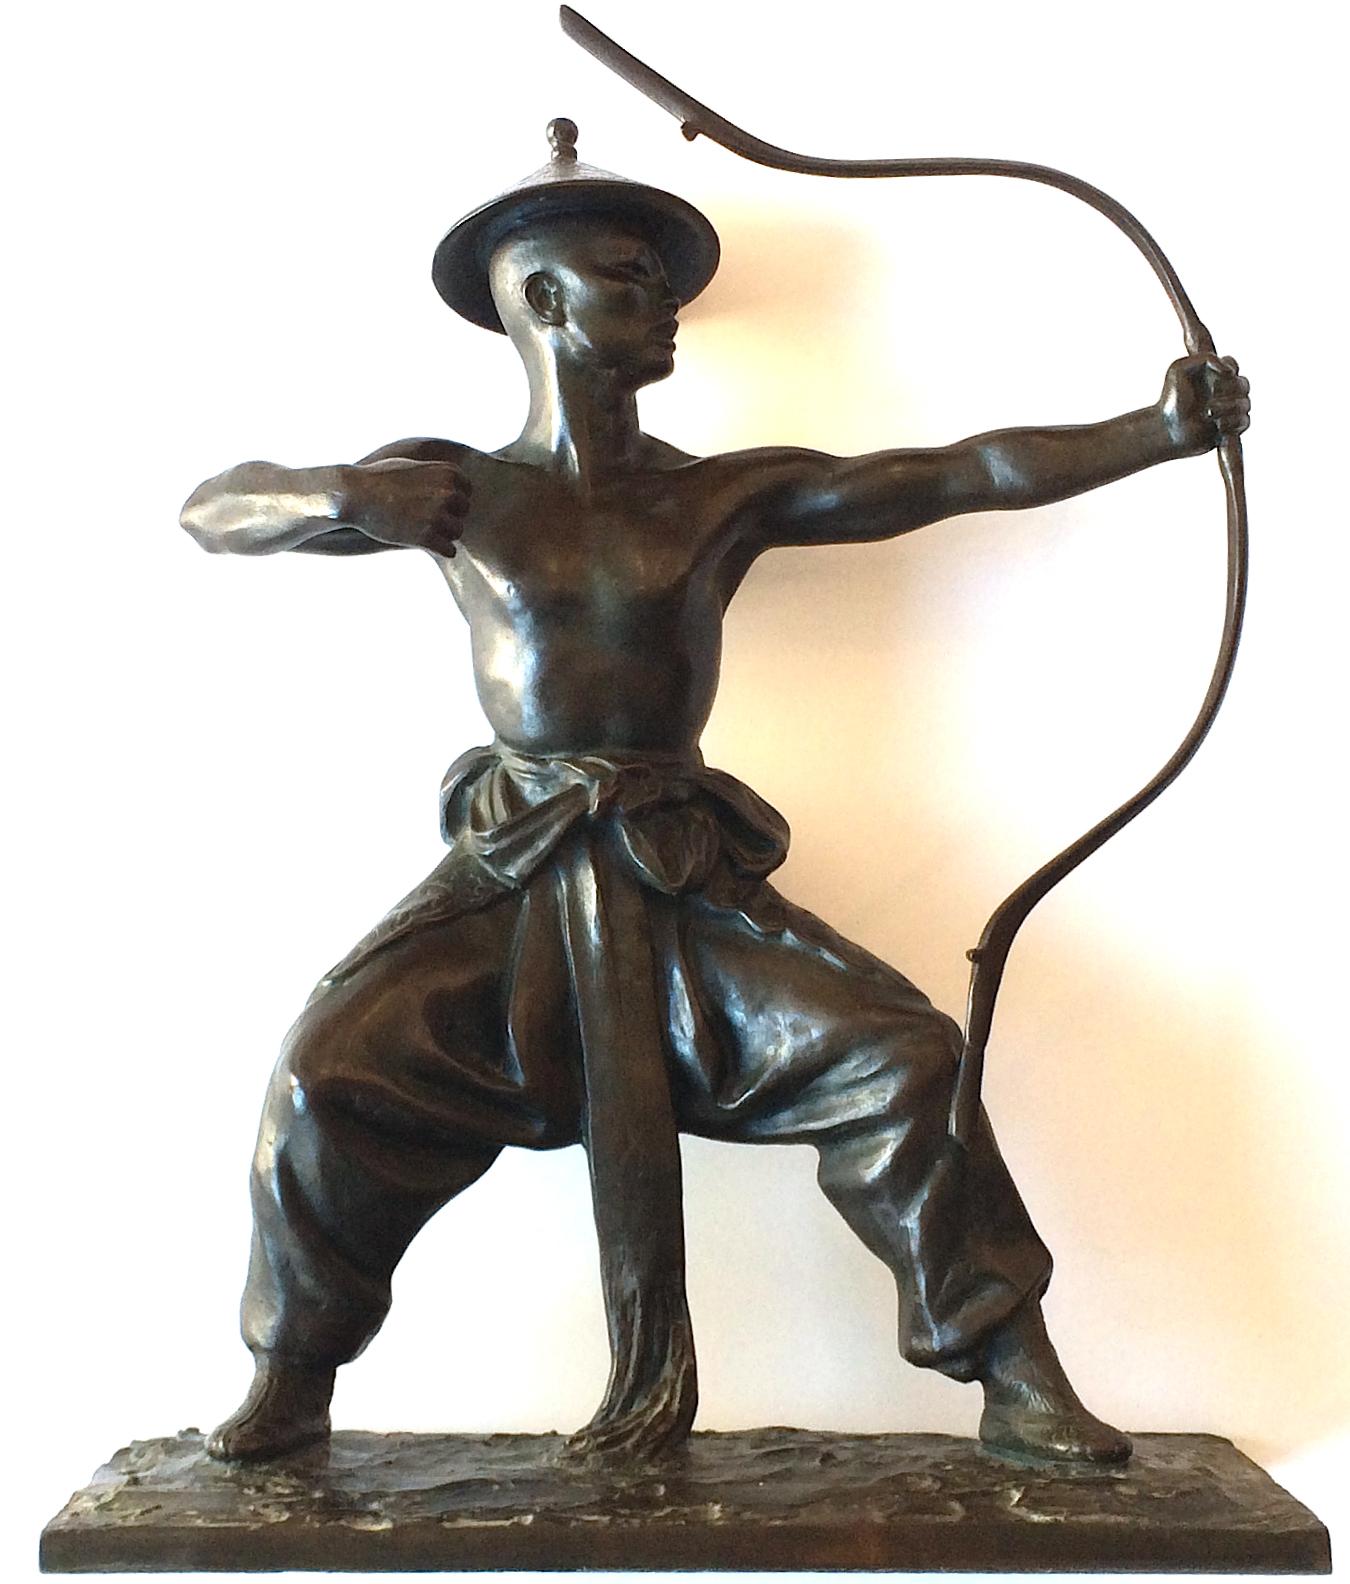 Mongolian Dancer bronze sculpture by Malvina Hoffman